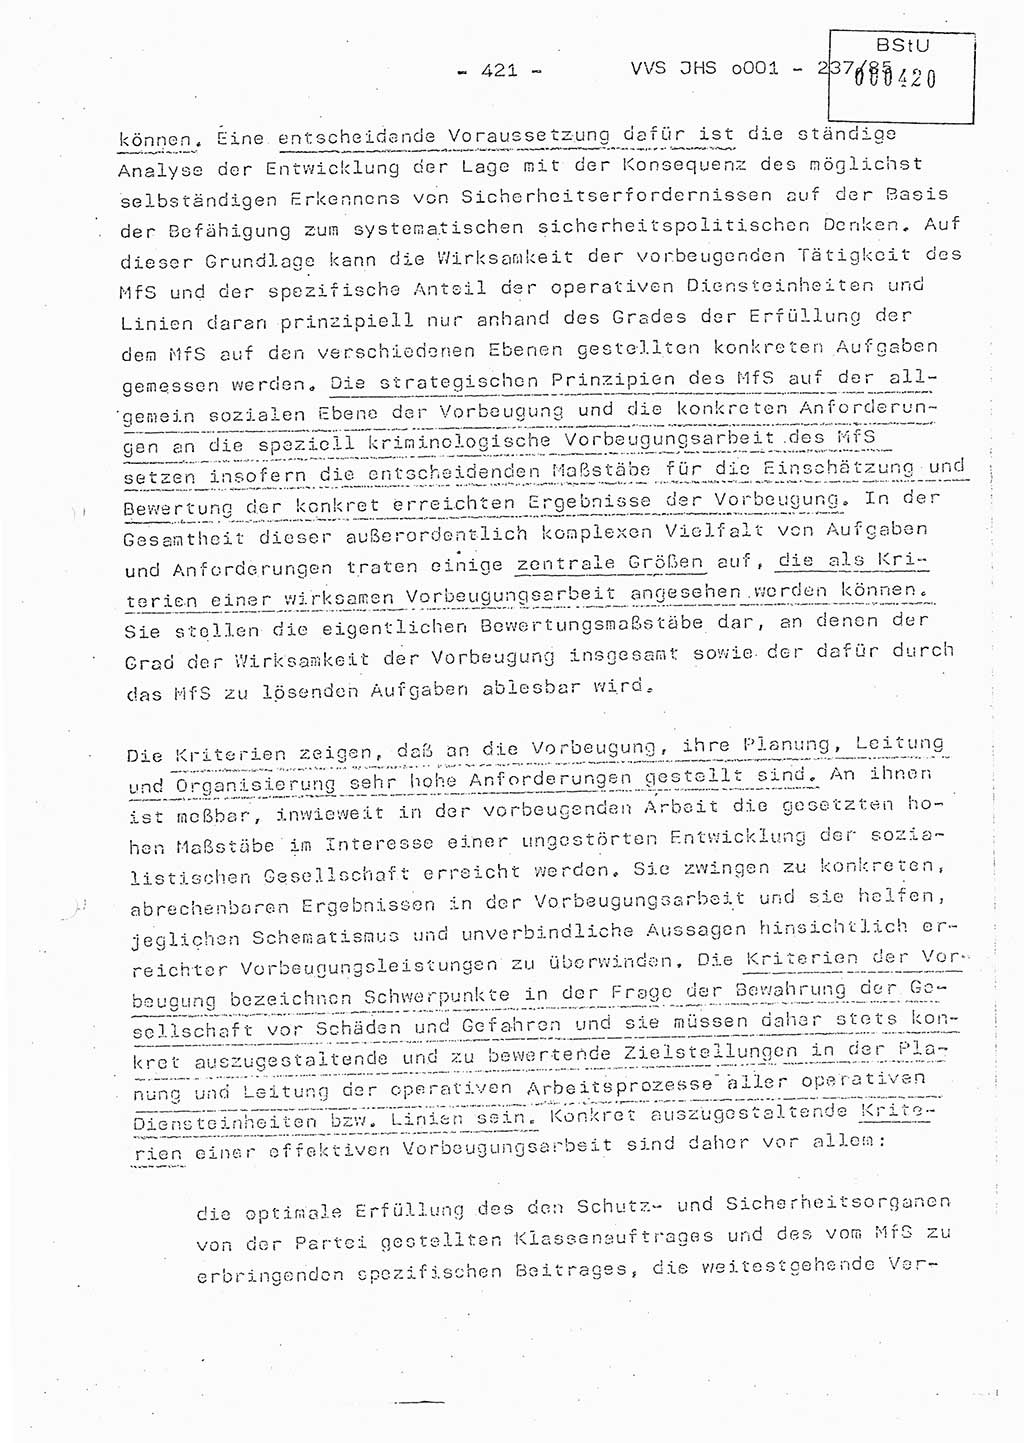 Dissertation Oberstleutnant Peter Jakulski (JHS), Oberstleutnat Christian Rudolph (HA Ⅸ), Major Horst Böttger (ZMD), Major Wolfgang Grüneberg (JHS), Major Albert Meutsch (JHS), Ministerium für Staatssicherheit (MfS) [Deutsche Demokratische Republik (DDR)], Juristische Hochschule (JHS), Vertrauliche Verschlußsache (VVS) o001-237/85, Potsdam 1985, Seite 421 (Diss. MfS DDR JHS VVS o001-237/85 1985, S. 421)